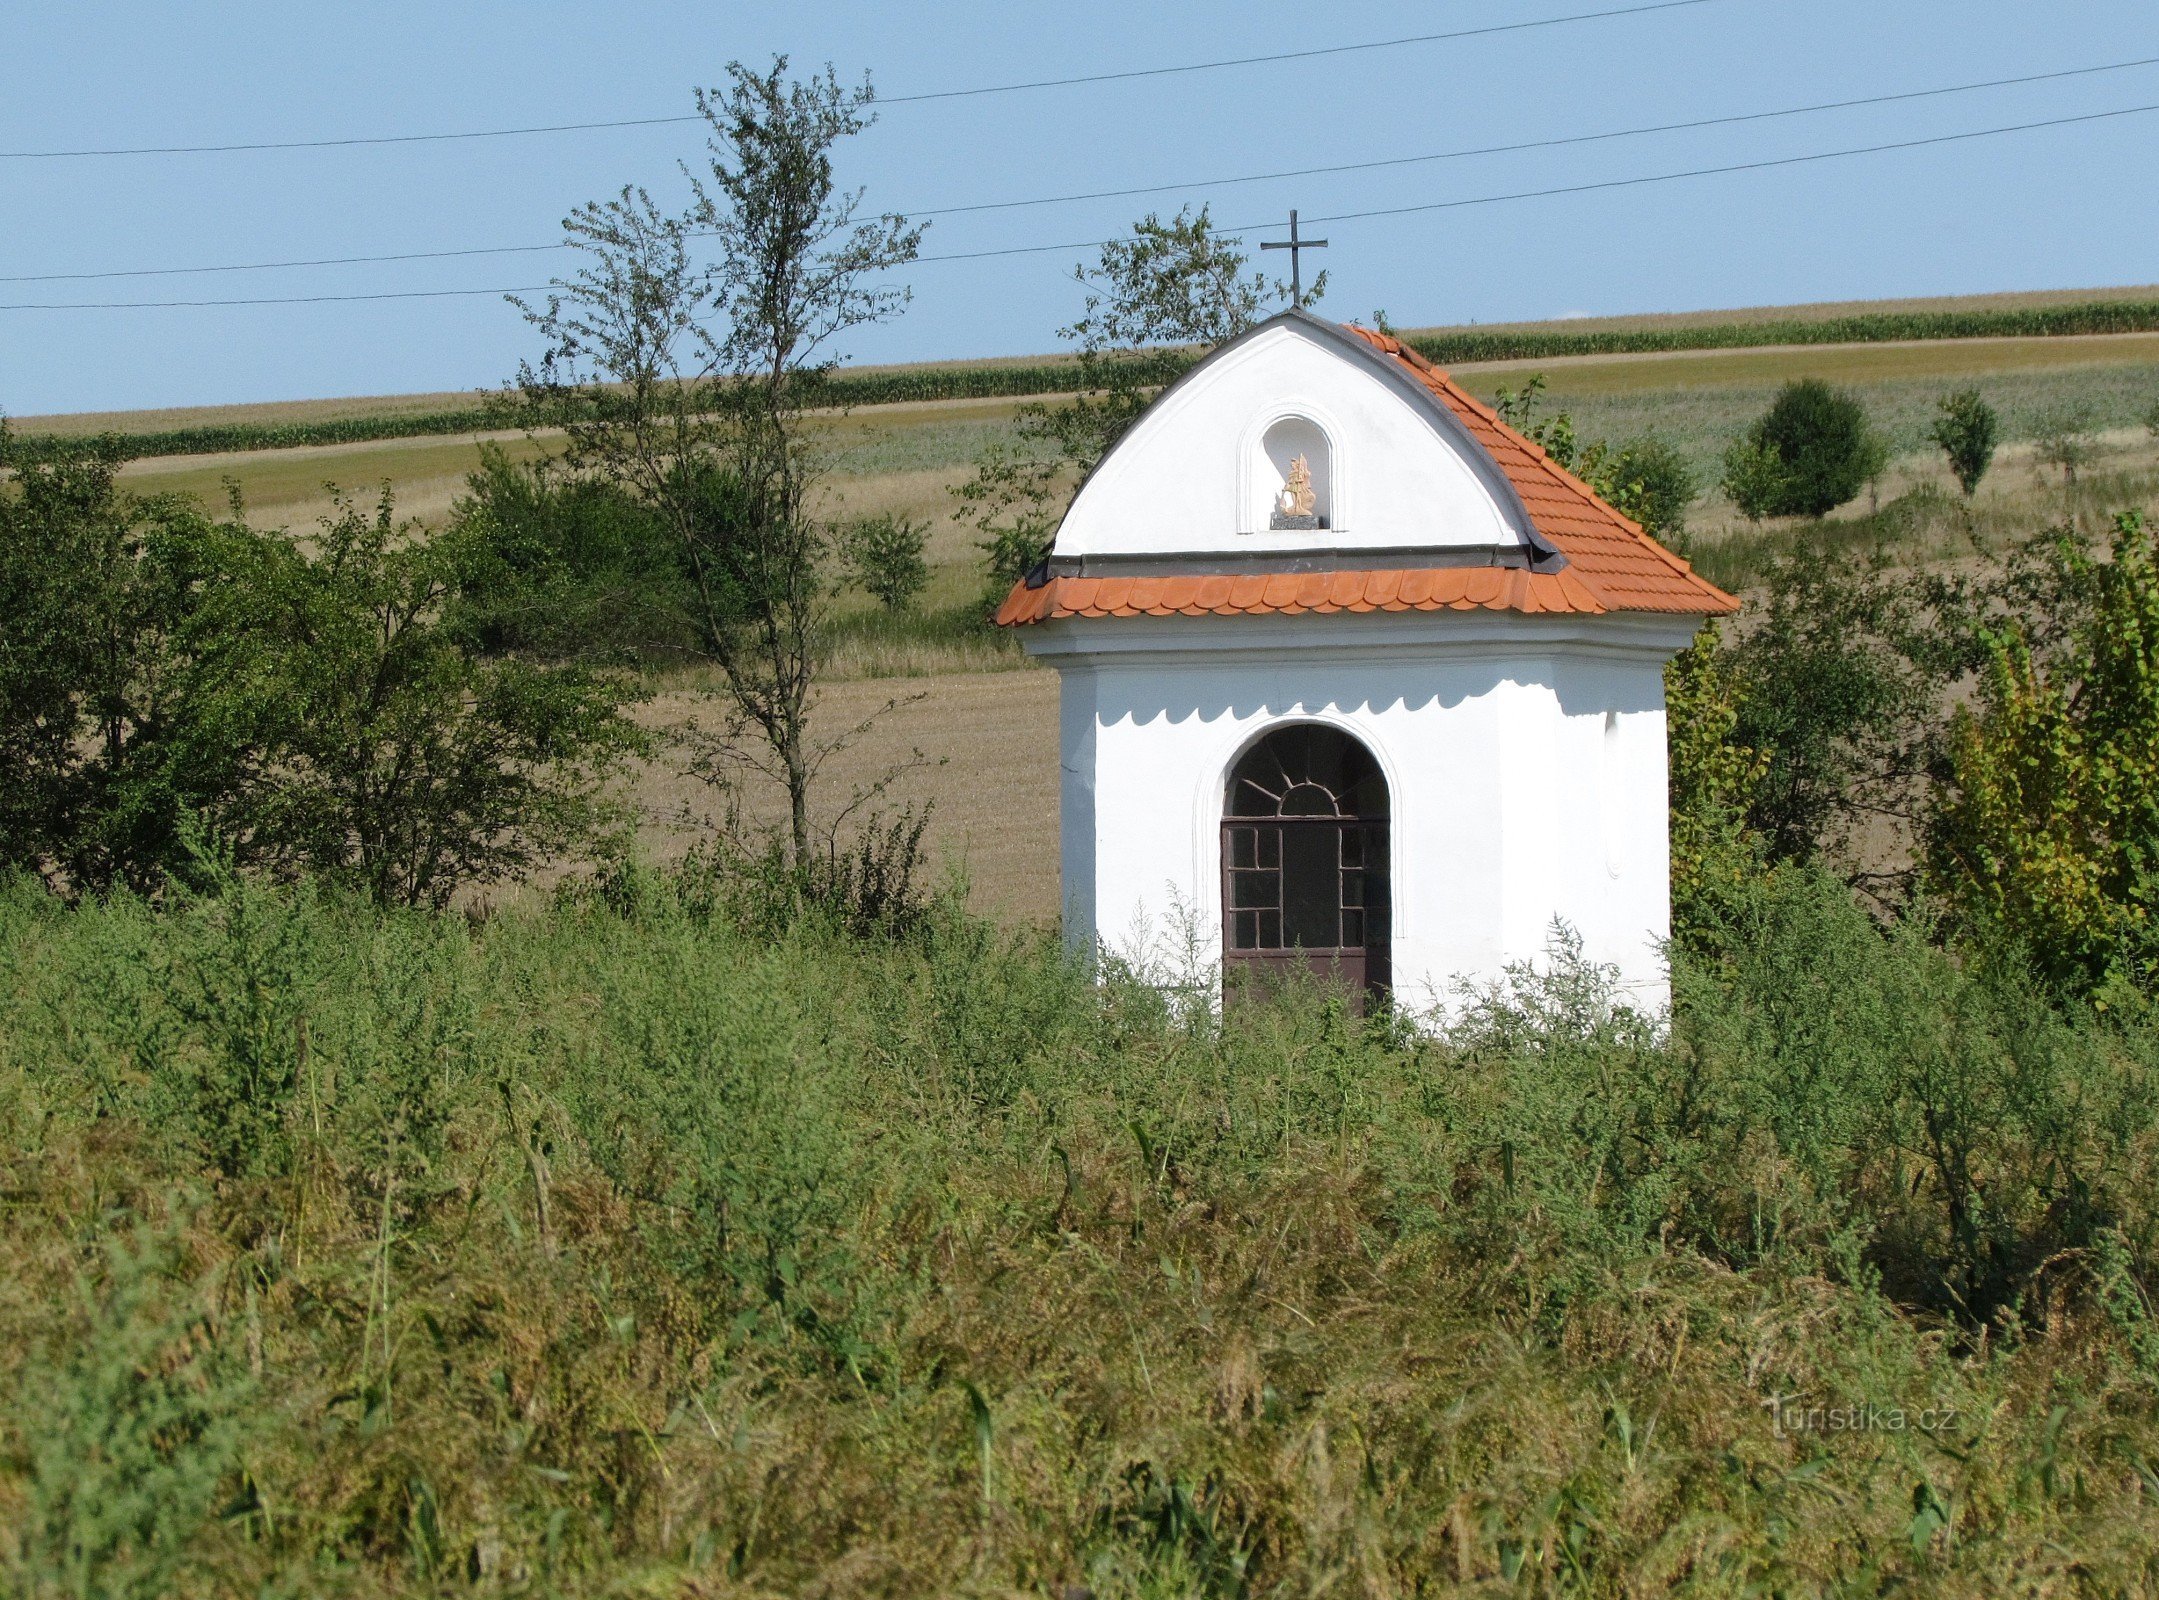 Racková - capela de São Floriano